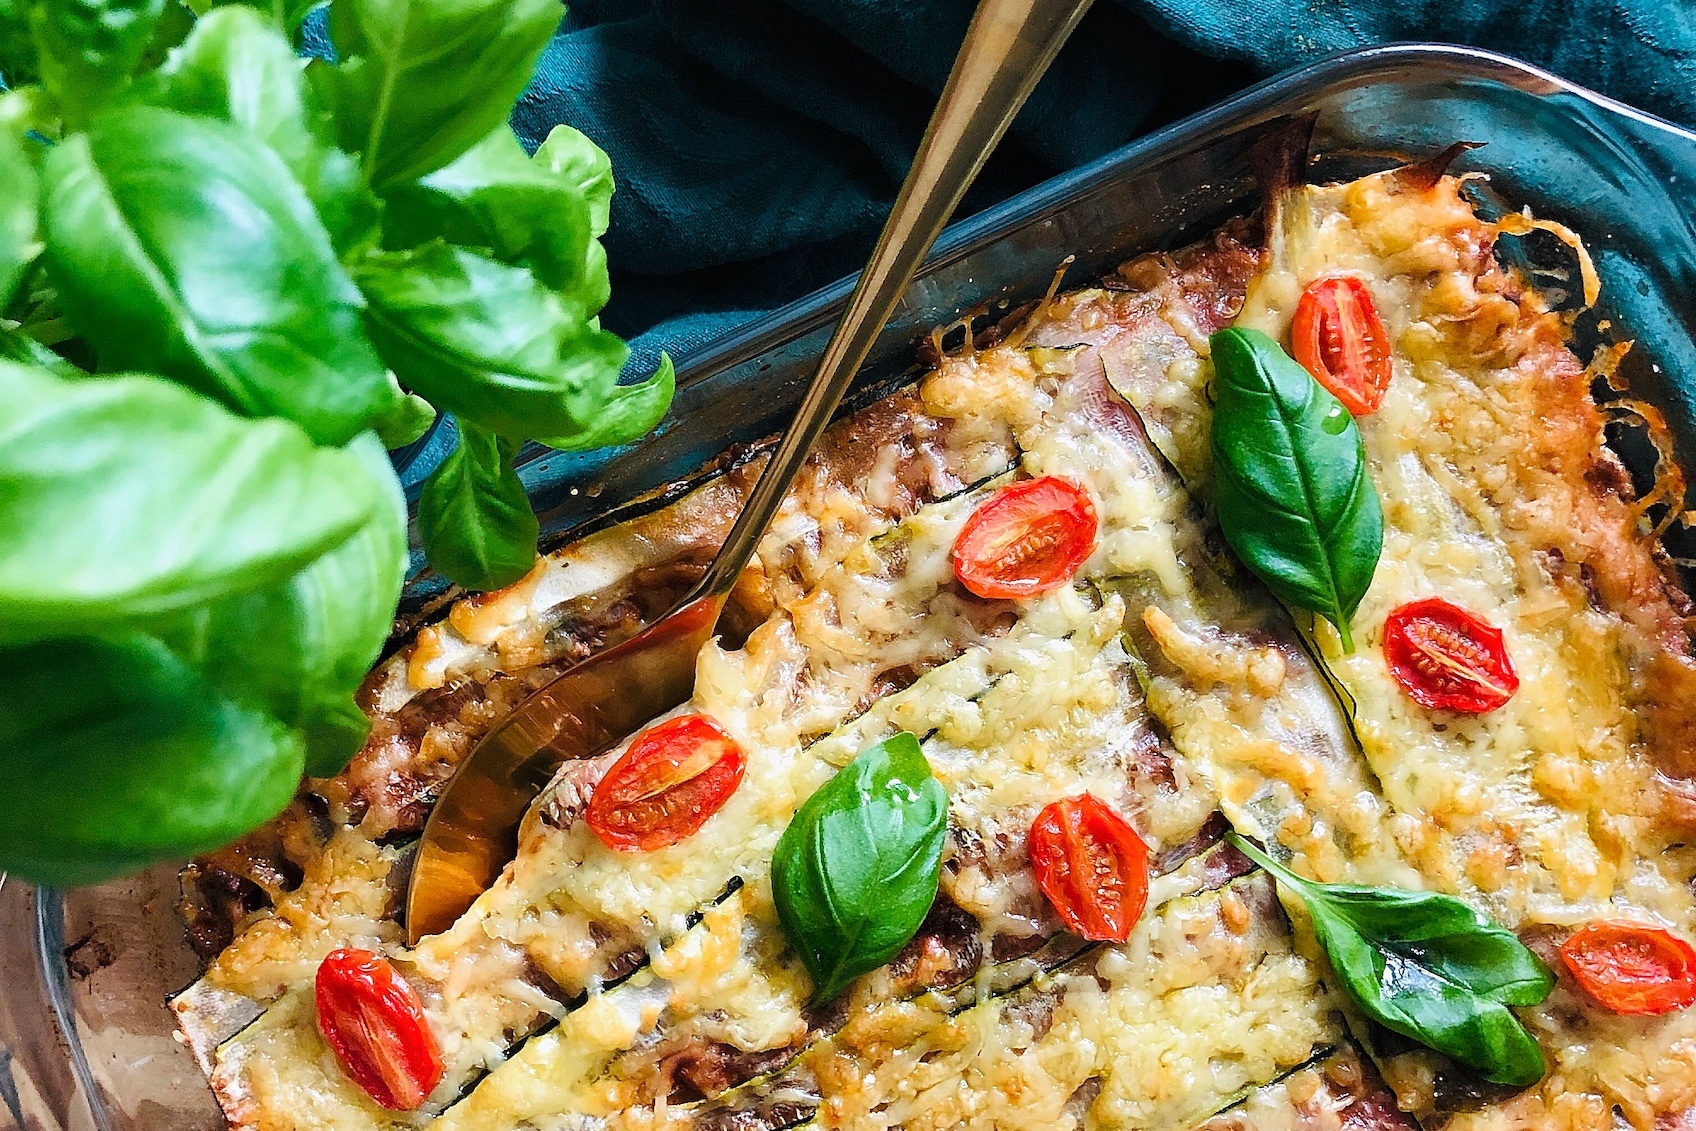 Gluteeniton lasagne vie kielen mennessään – helppo ketoresepti